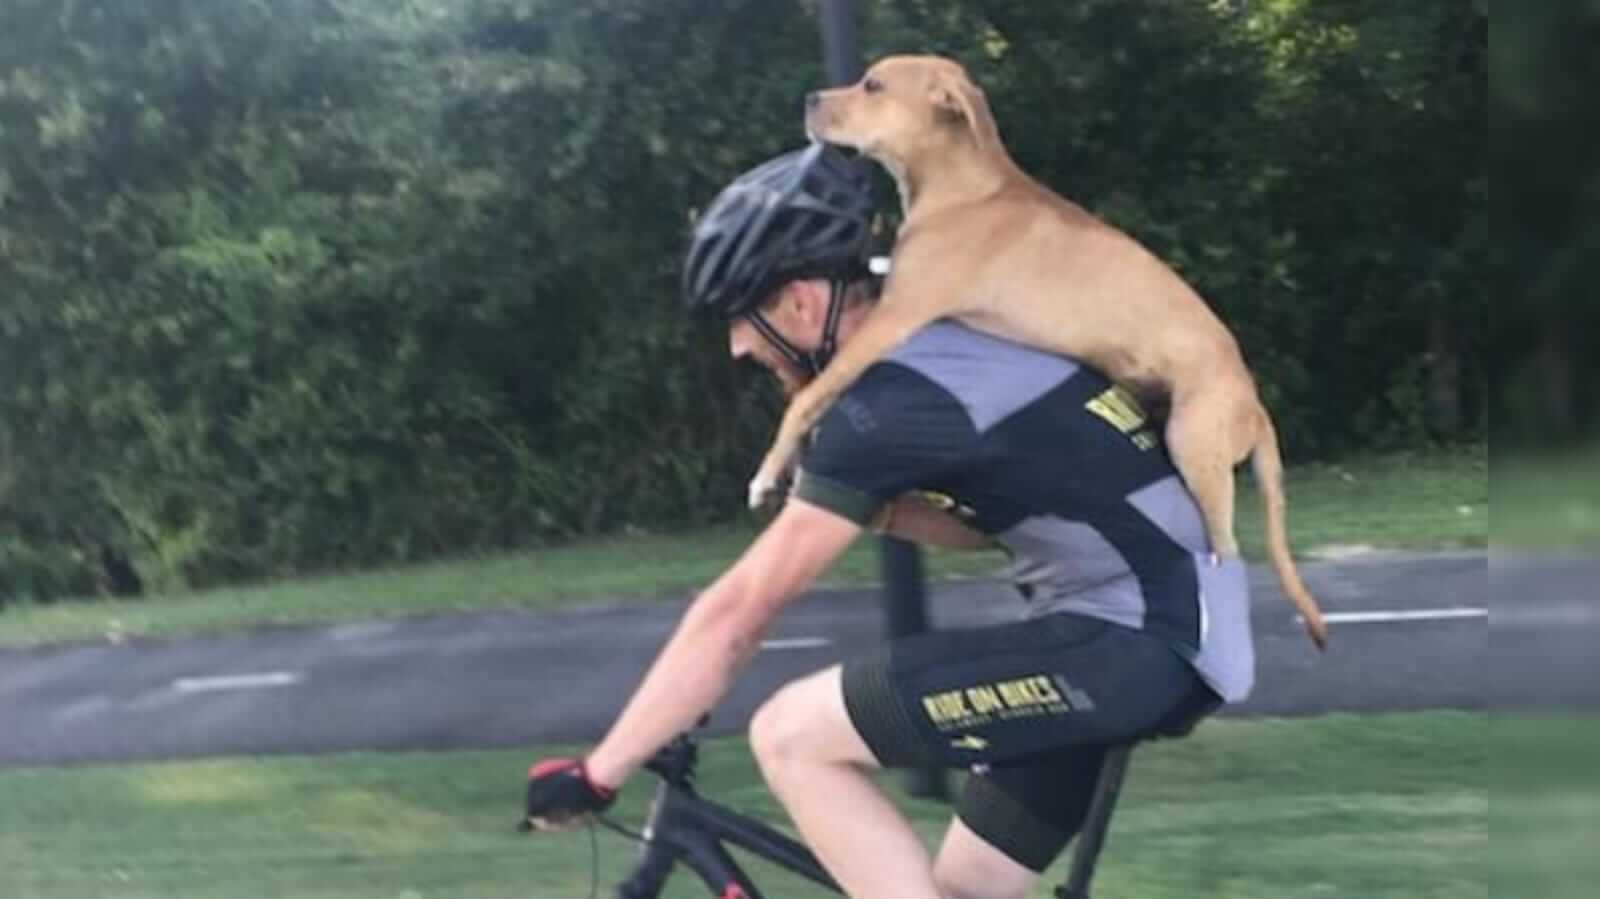 Ciclista carregando cachorro ferino nas costas